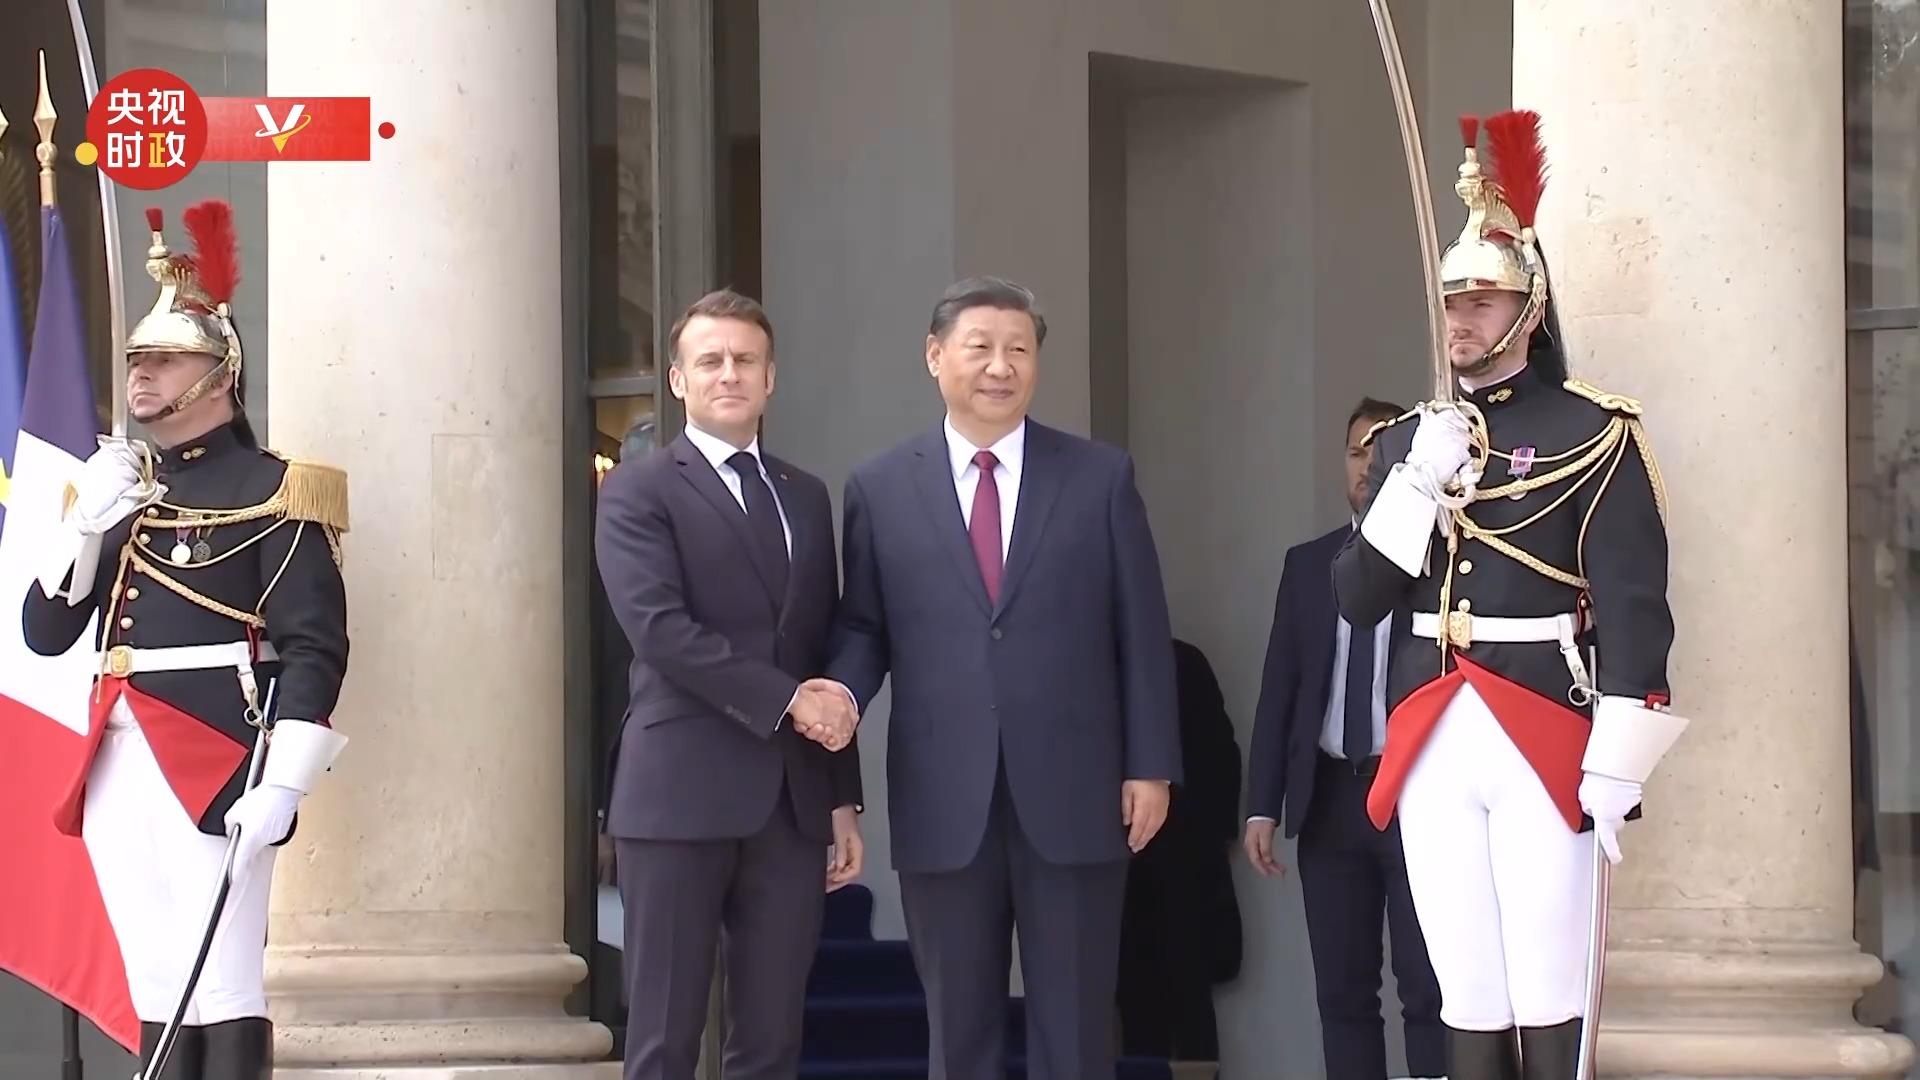 视频丨习近平抵达爱丽舍宫 法国总统马克龙热情迎接